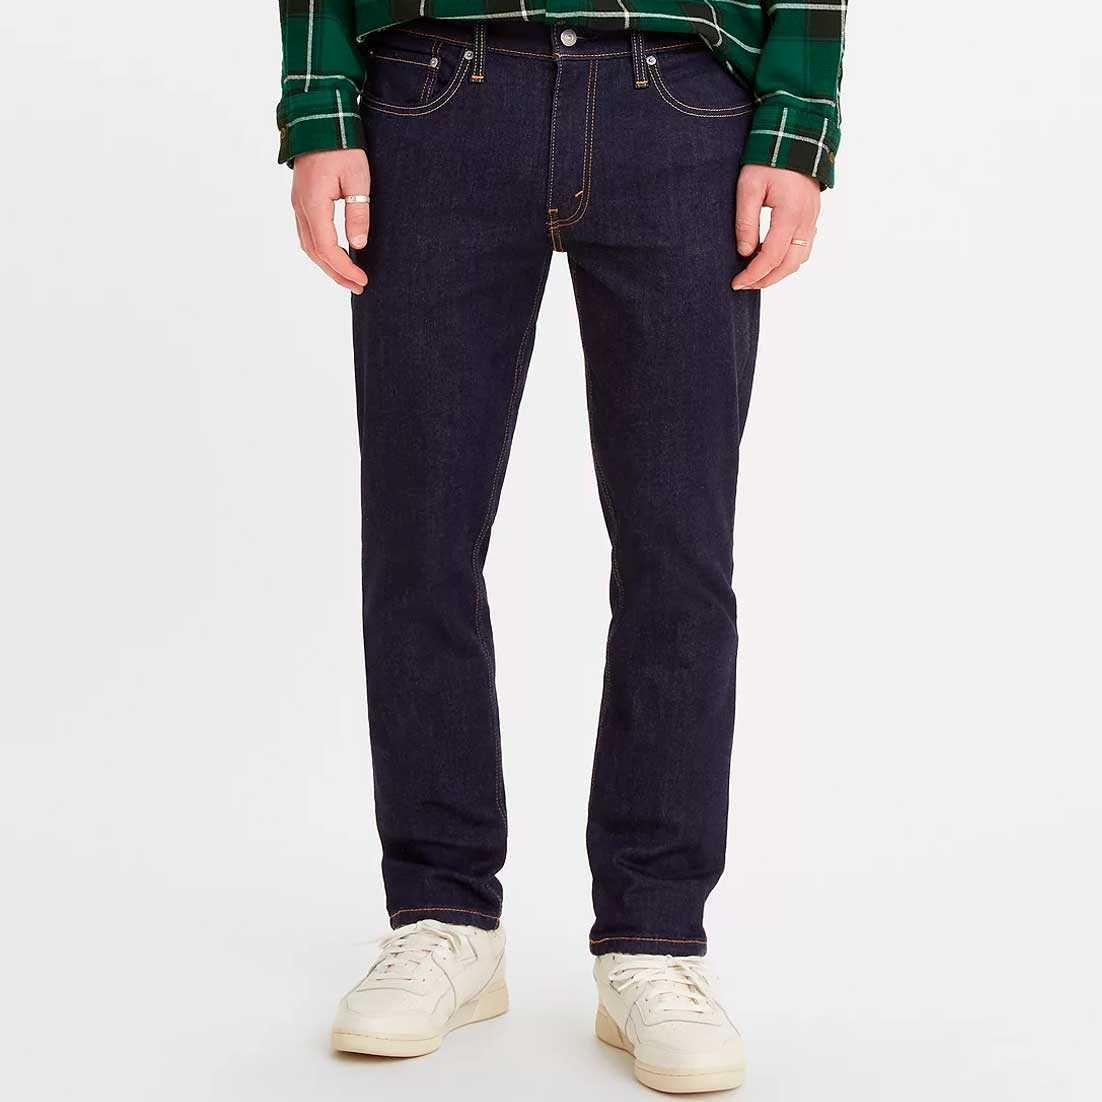 Новые мужские джинсы Levis 511, 512 Slim Fit. Левис, ливайс из США.